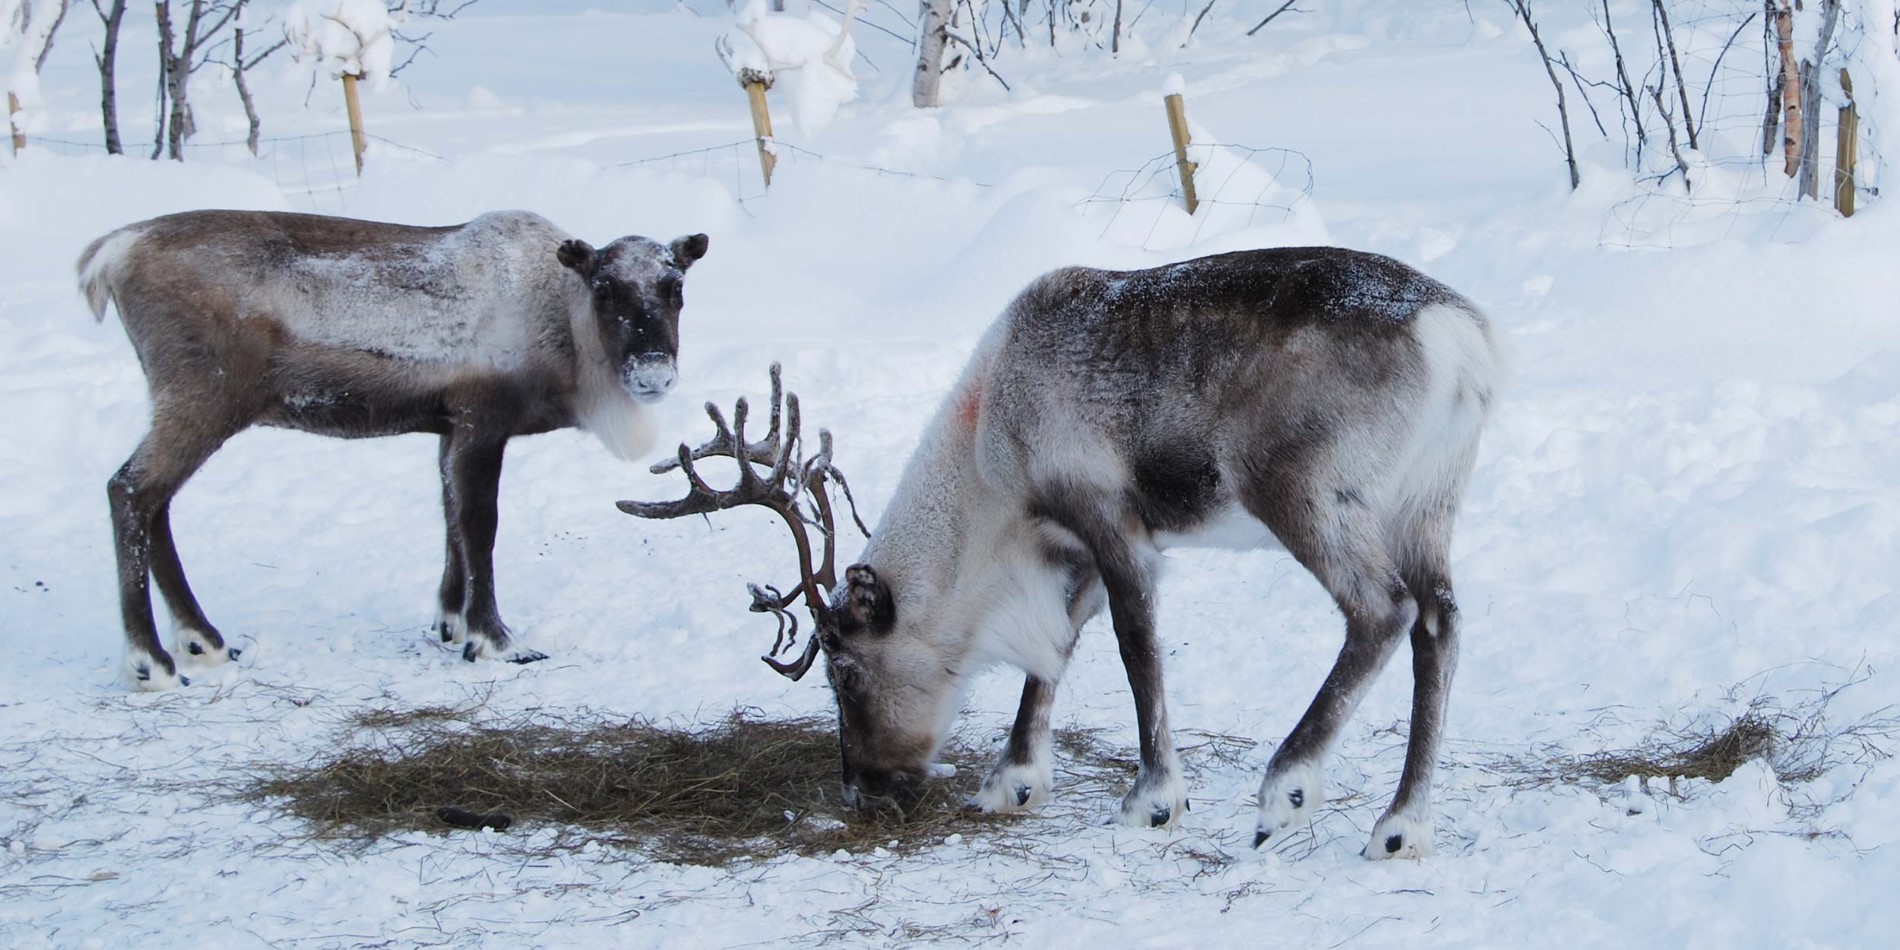 Les rennes se nourrissent en creusant dans la neige pendant l'hiver